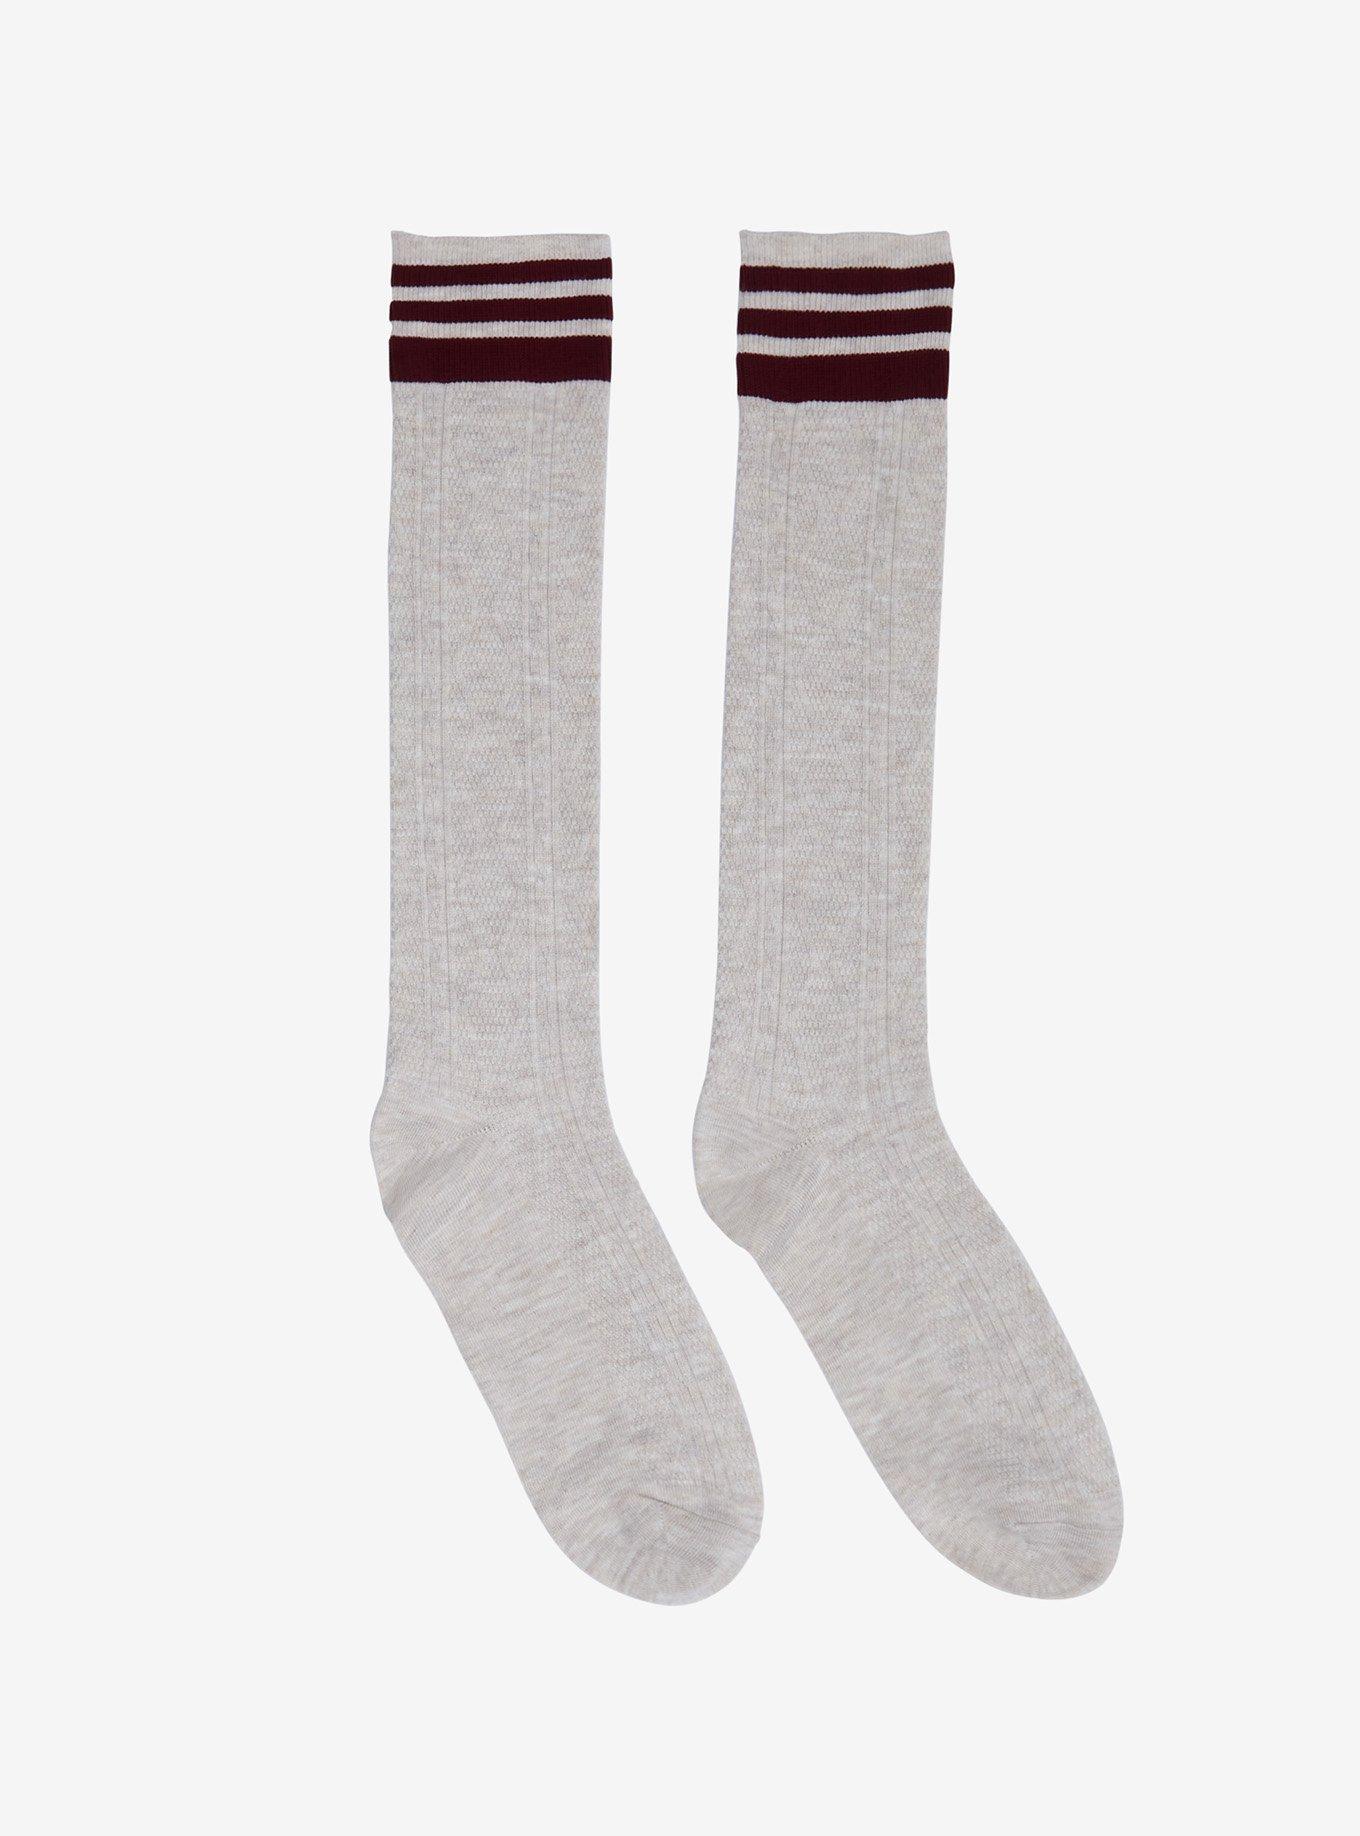 Oatmeal & Maroon Knee-High Socks | Hot Topic